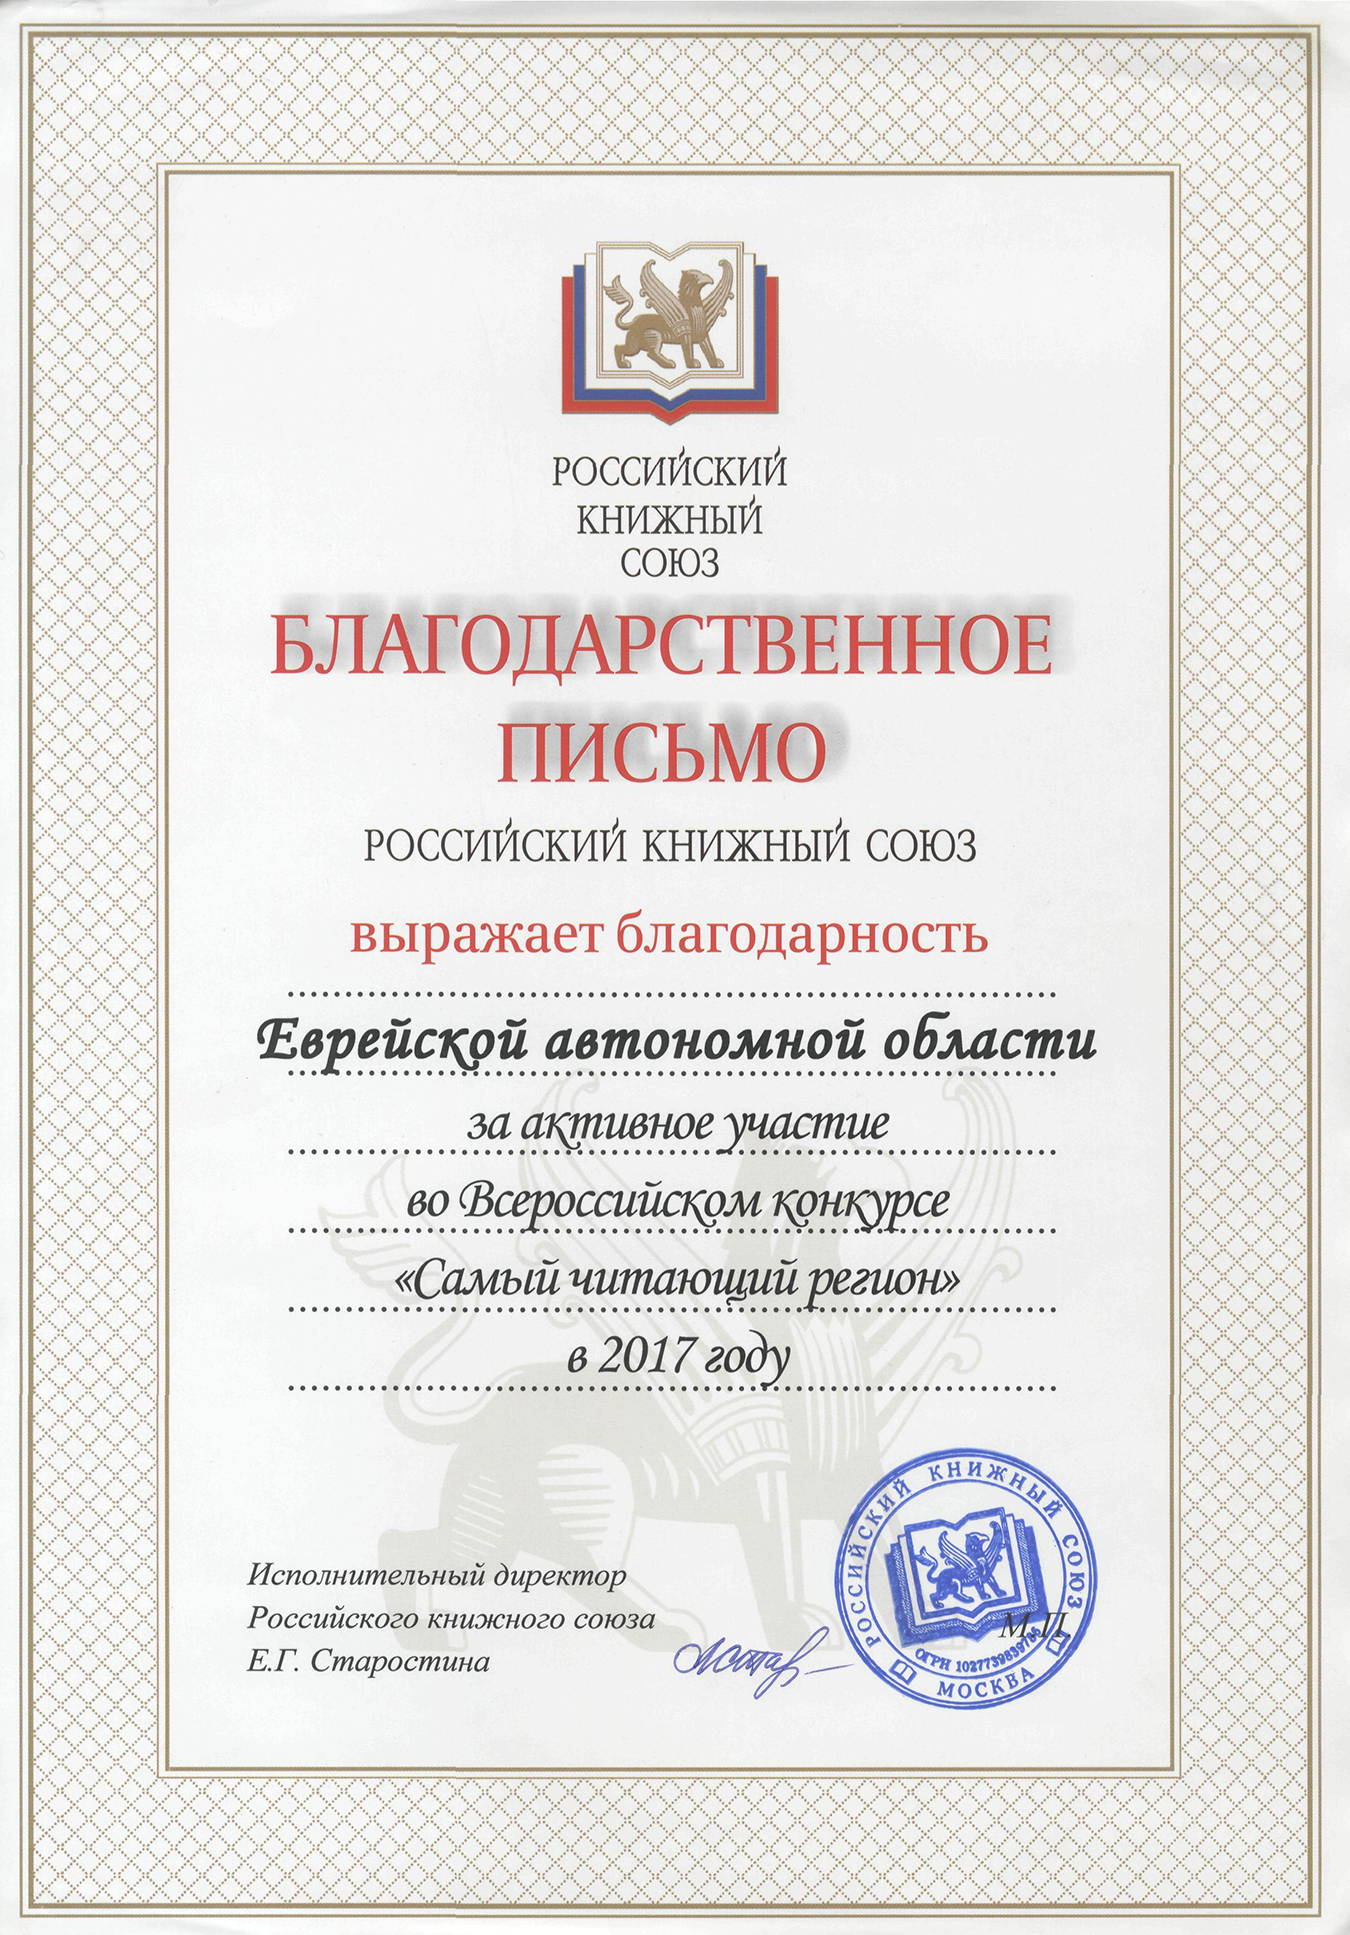 Благодарственное письмо Российского книжного союза